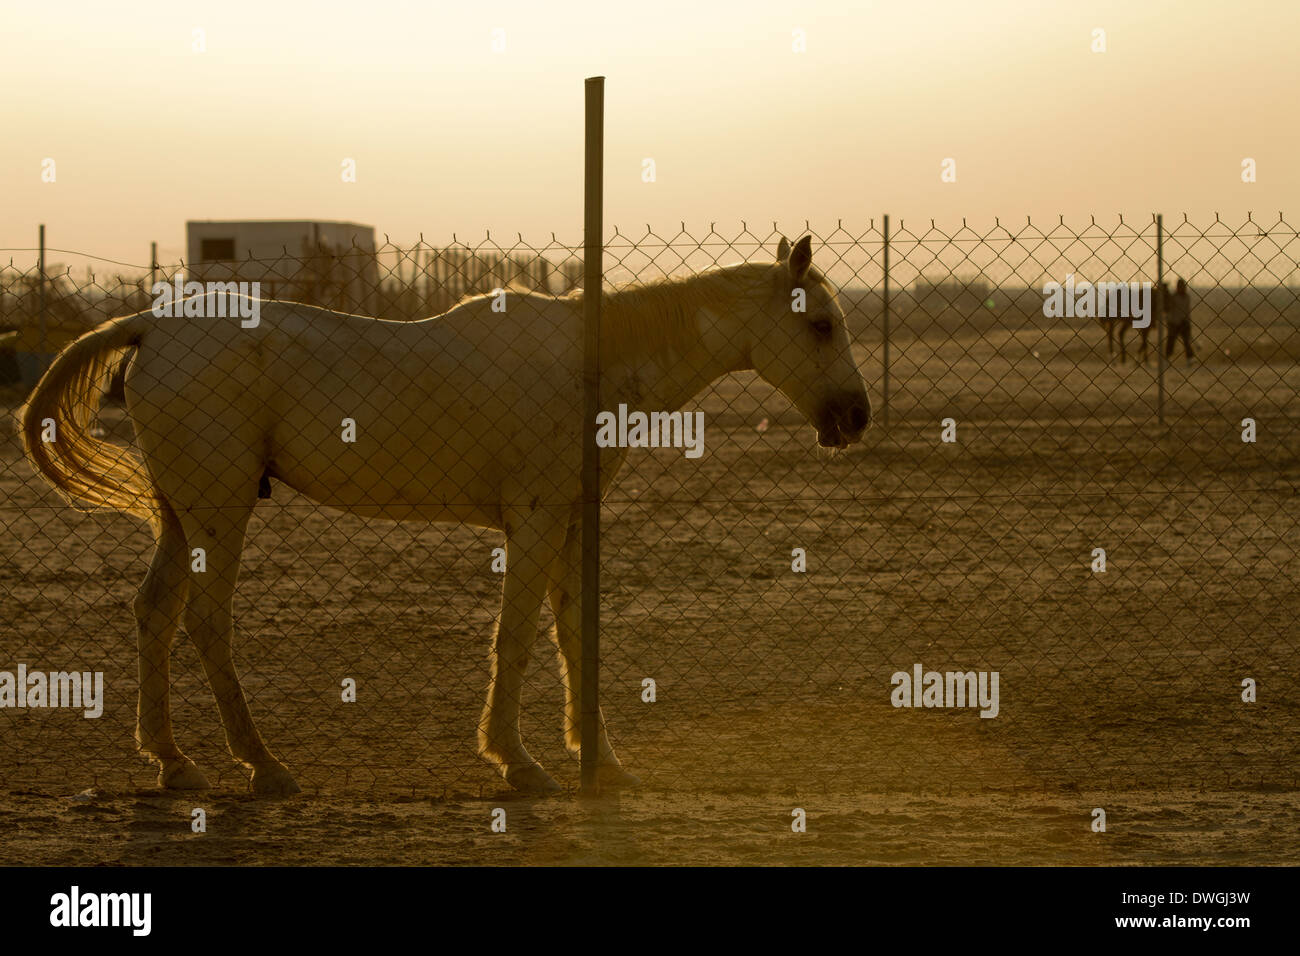 Alte arabische weißes Pferd hinter Draht Zaun Hintergrundbeleuchtung Wüste Stockfoto